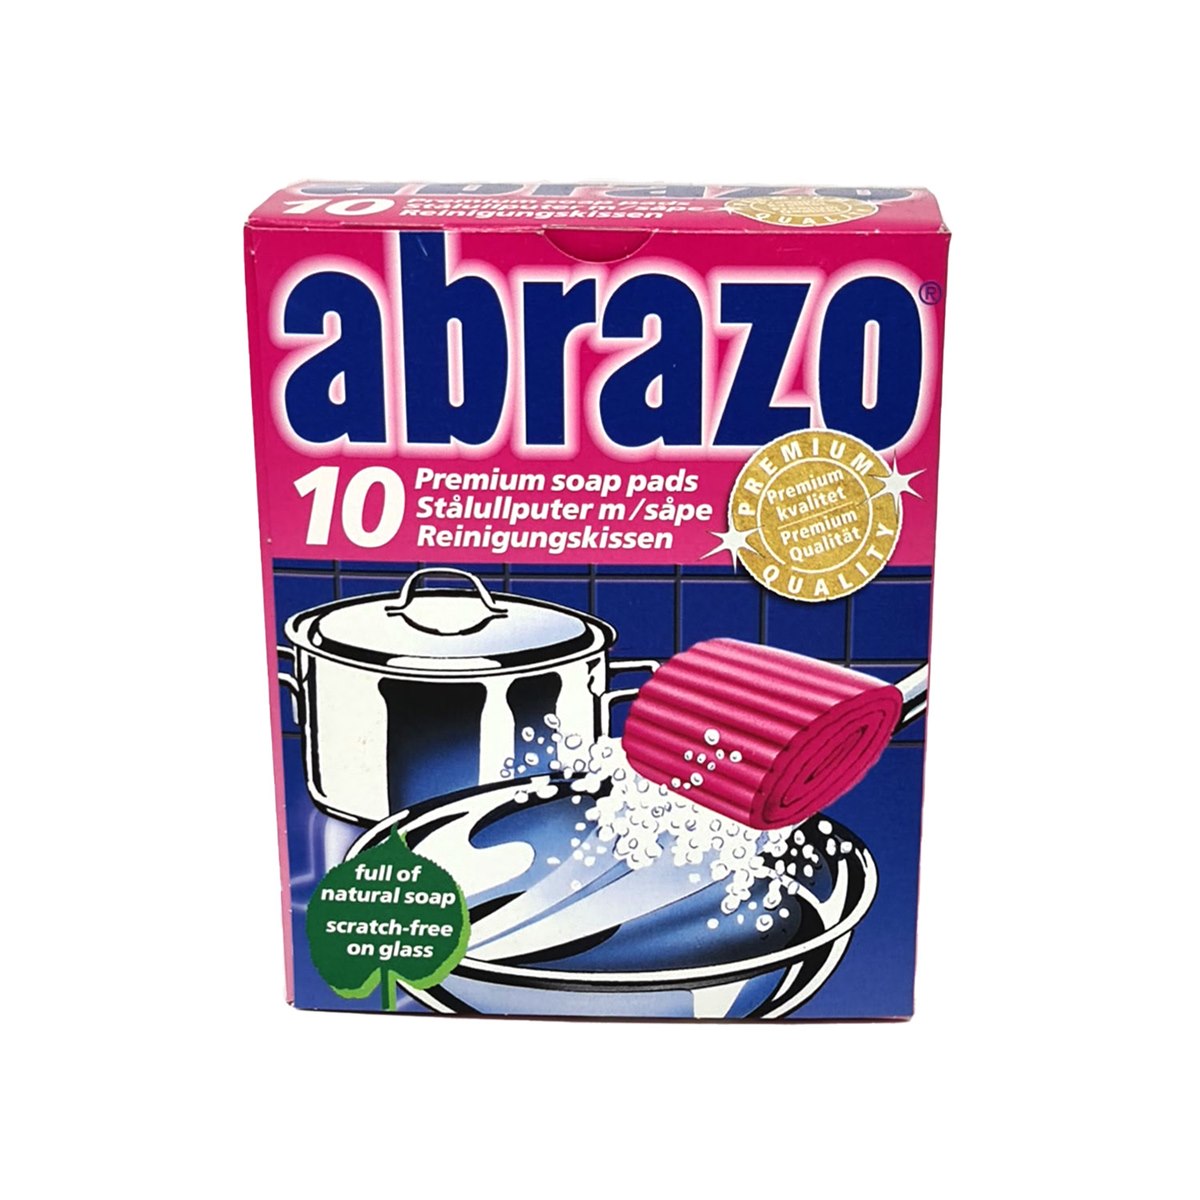 Trollull Abrazo Premium Soap Pads